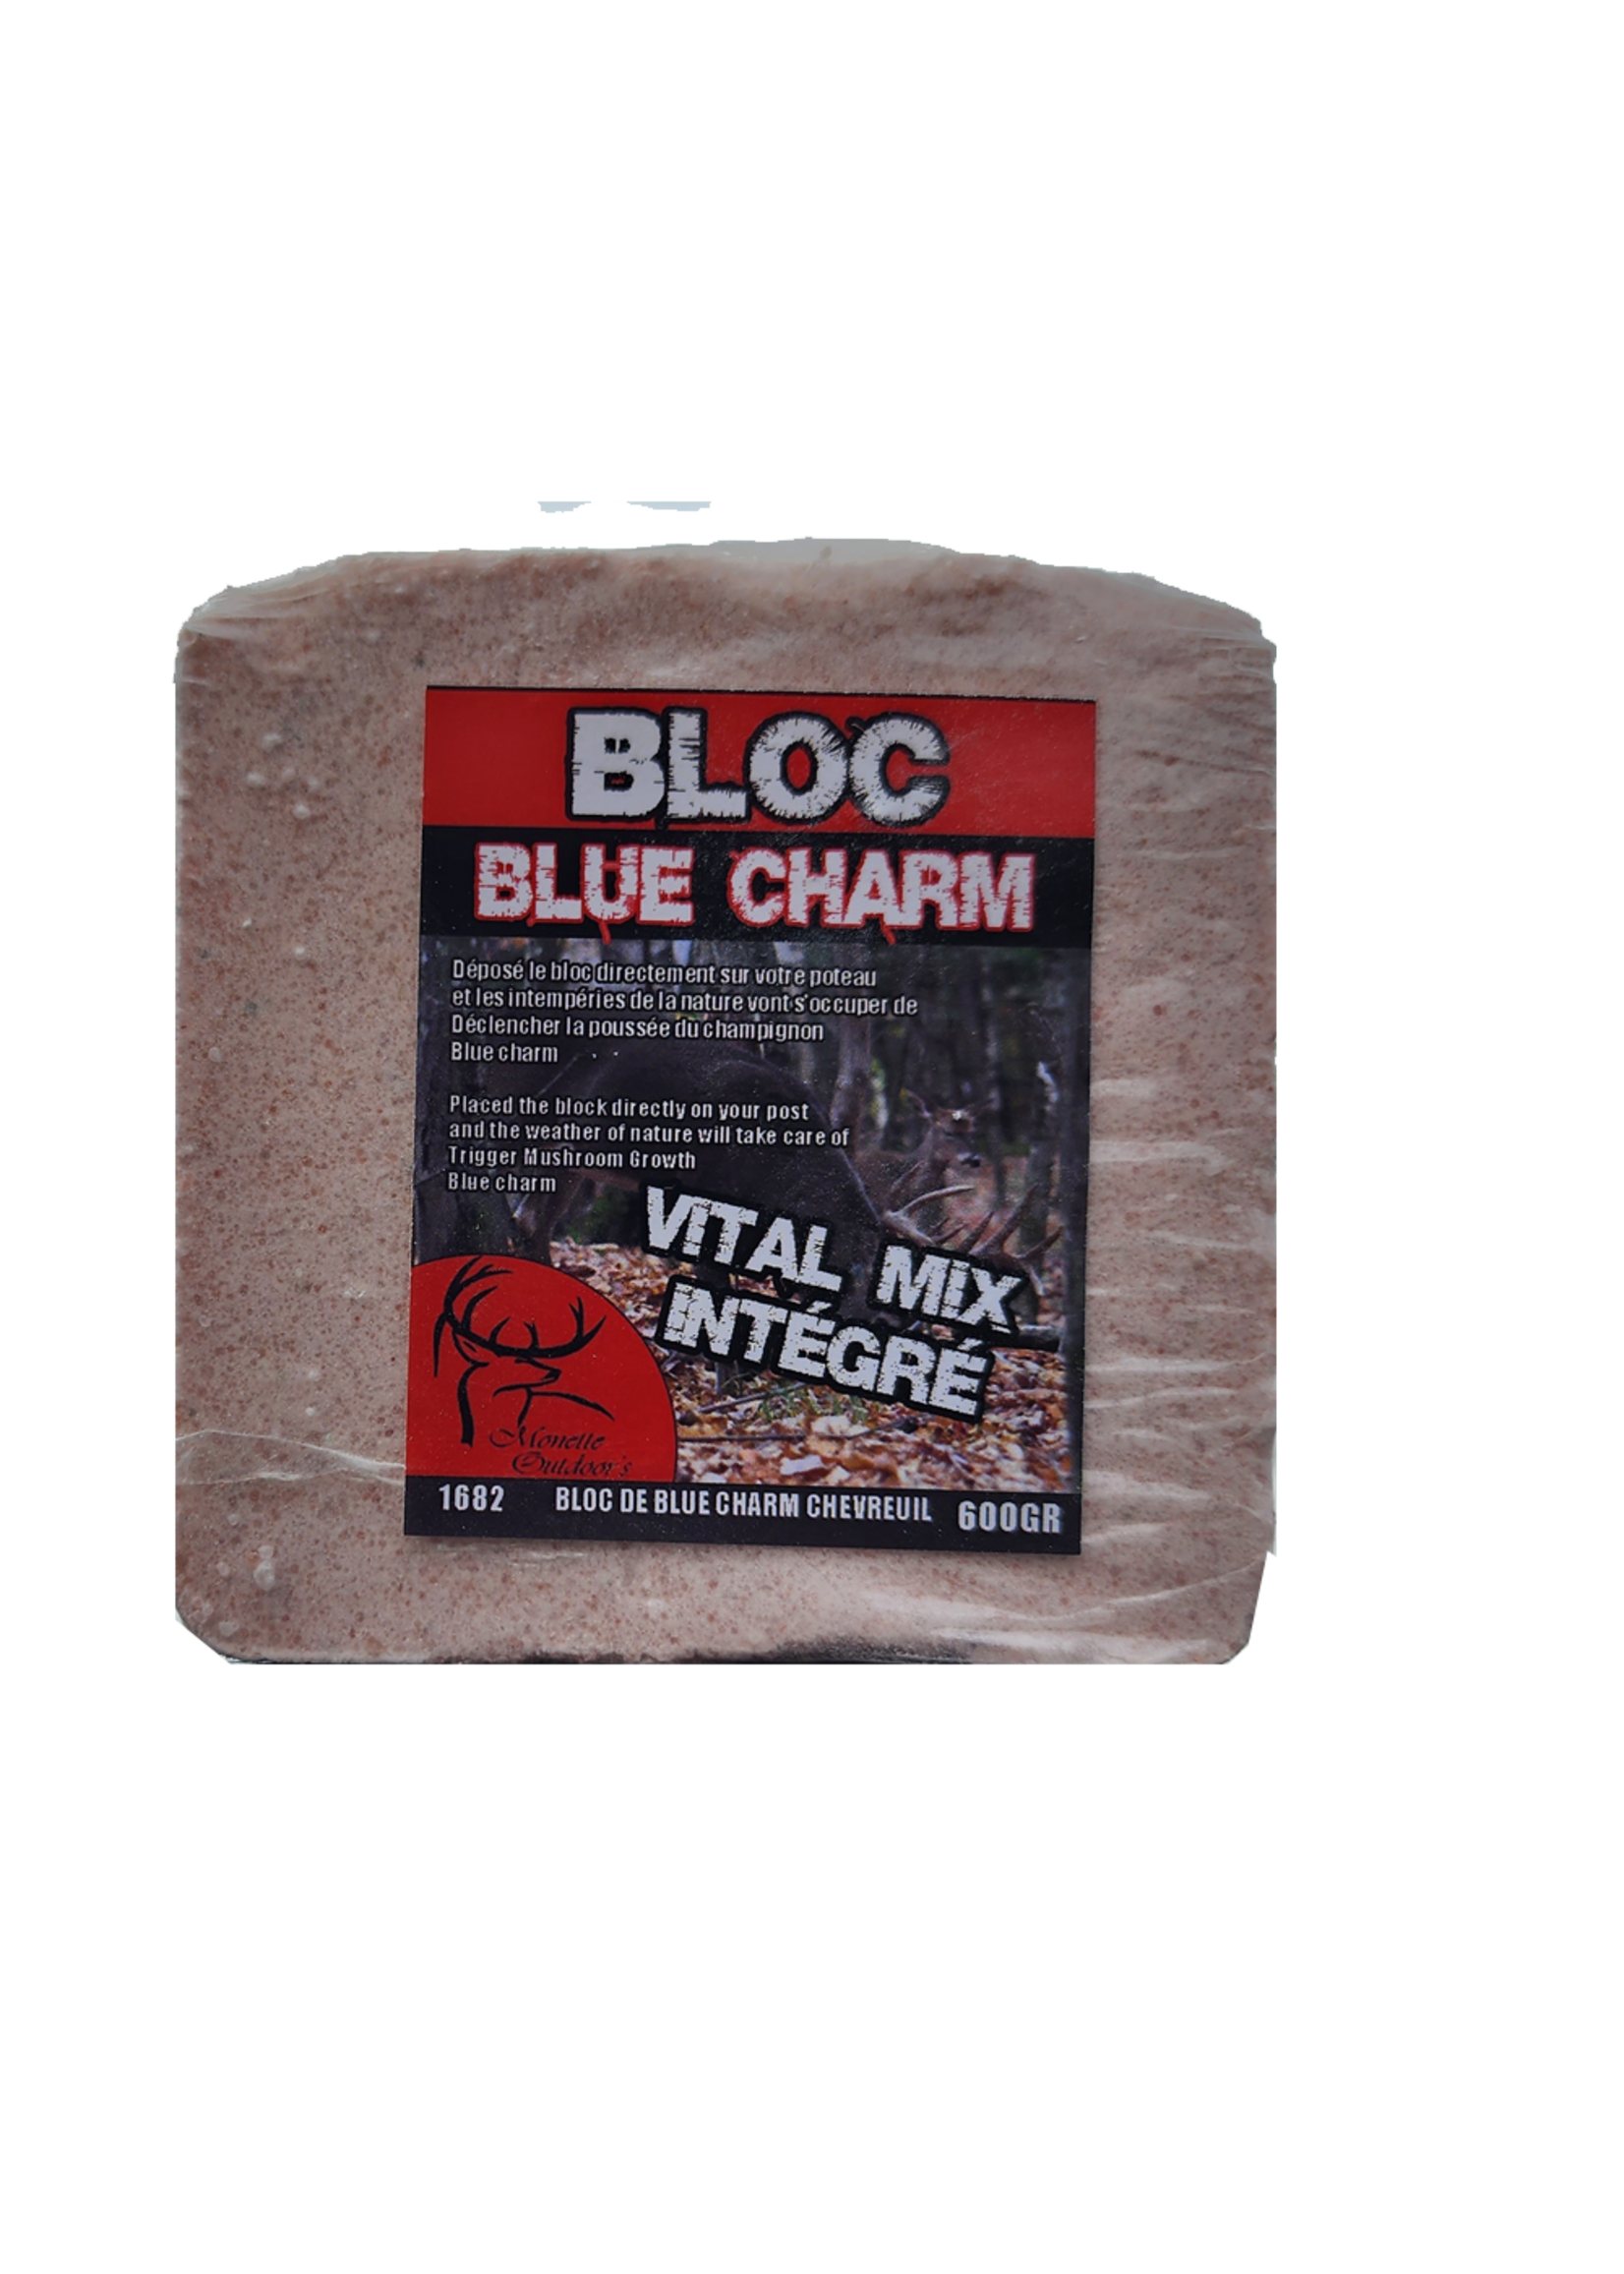 Ferme Monette bloc blue charm vital mix integre chevreuil